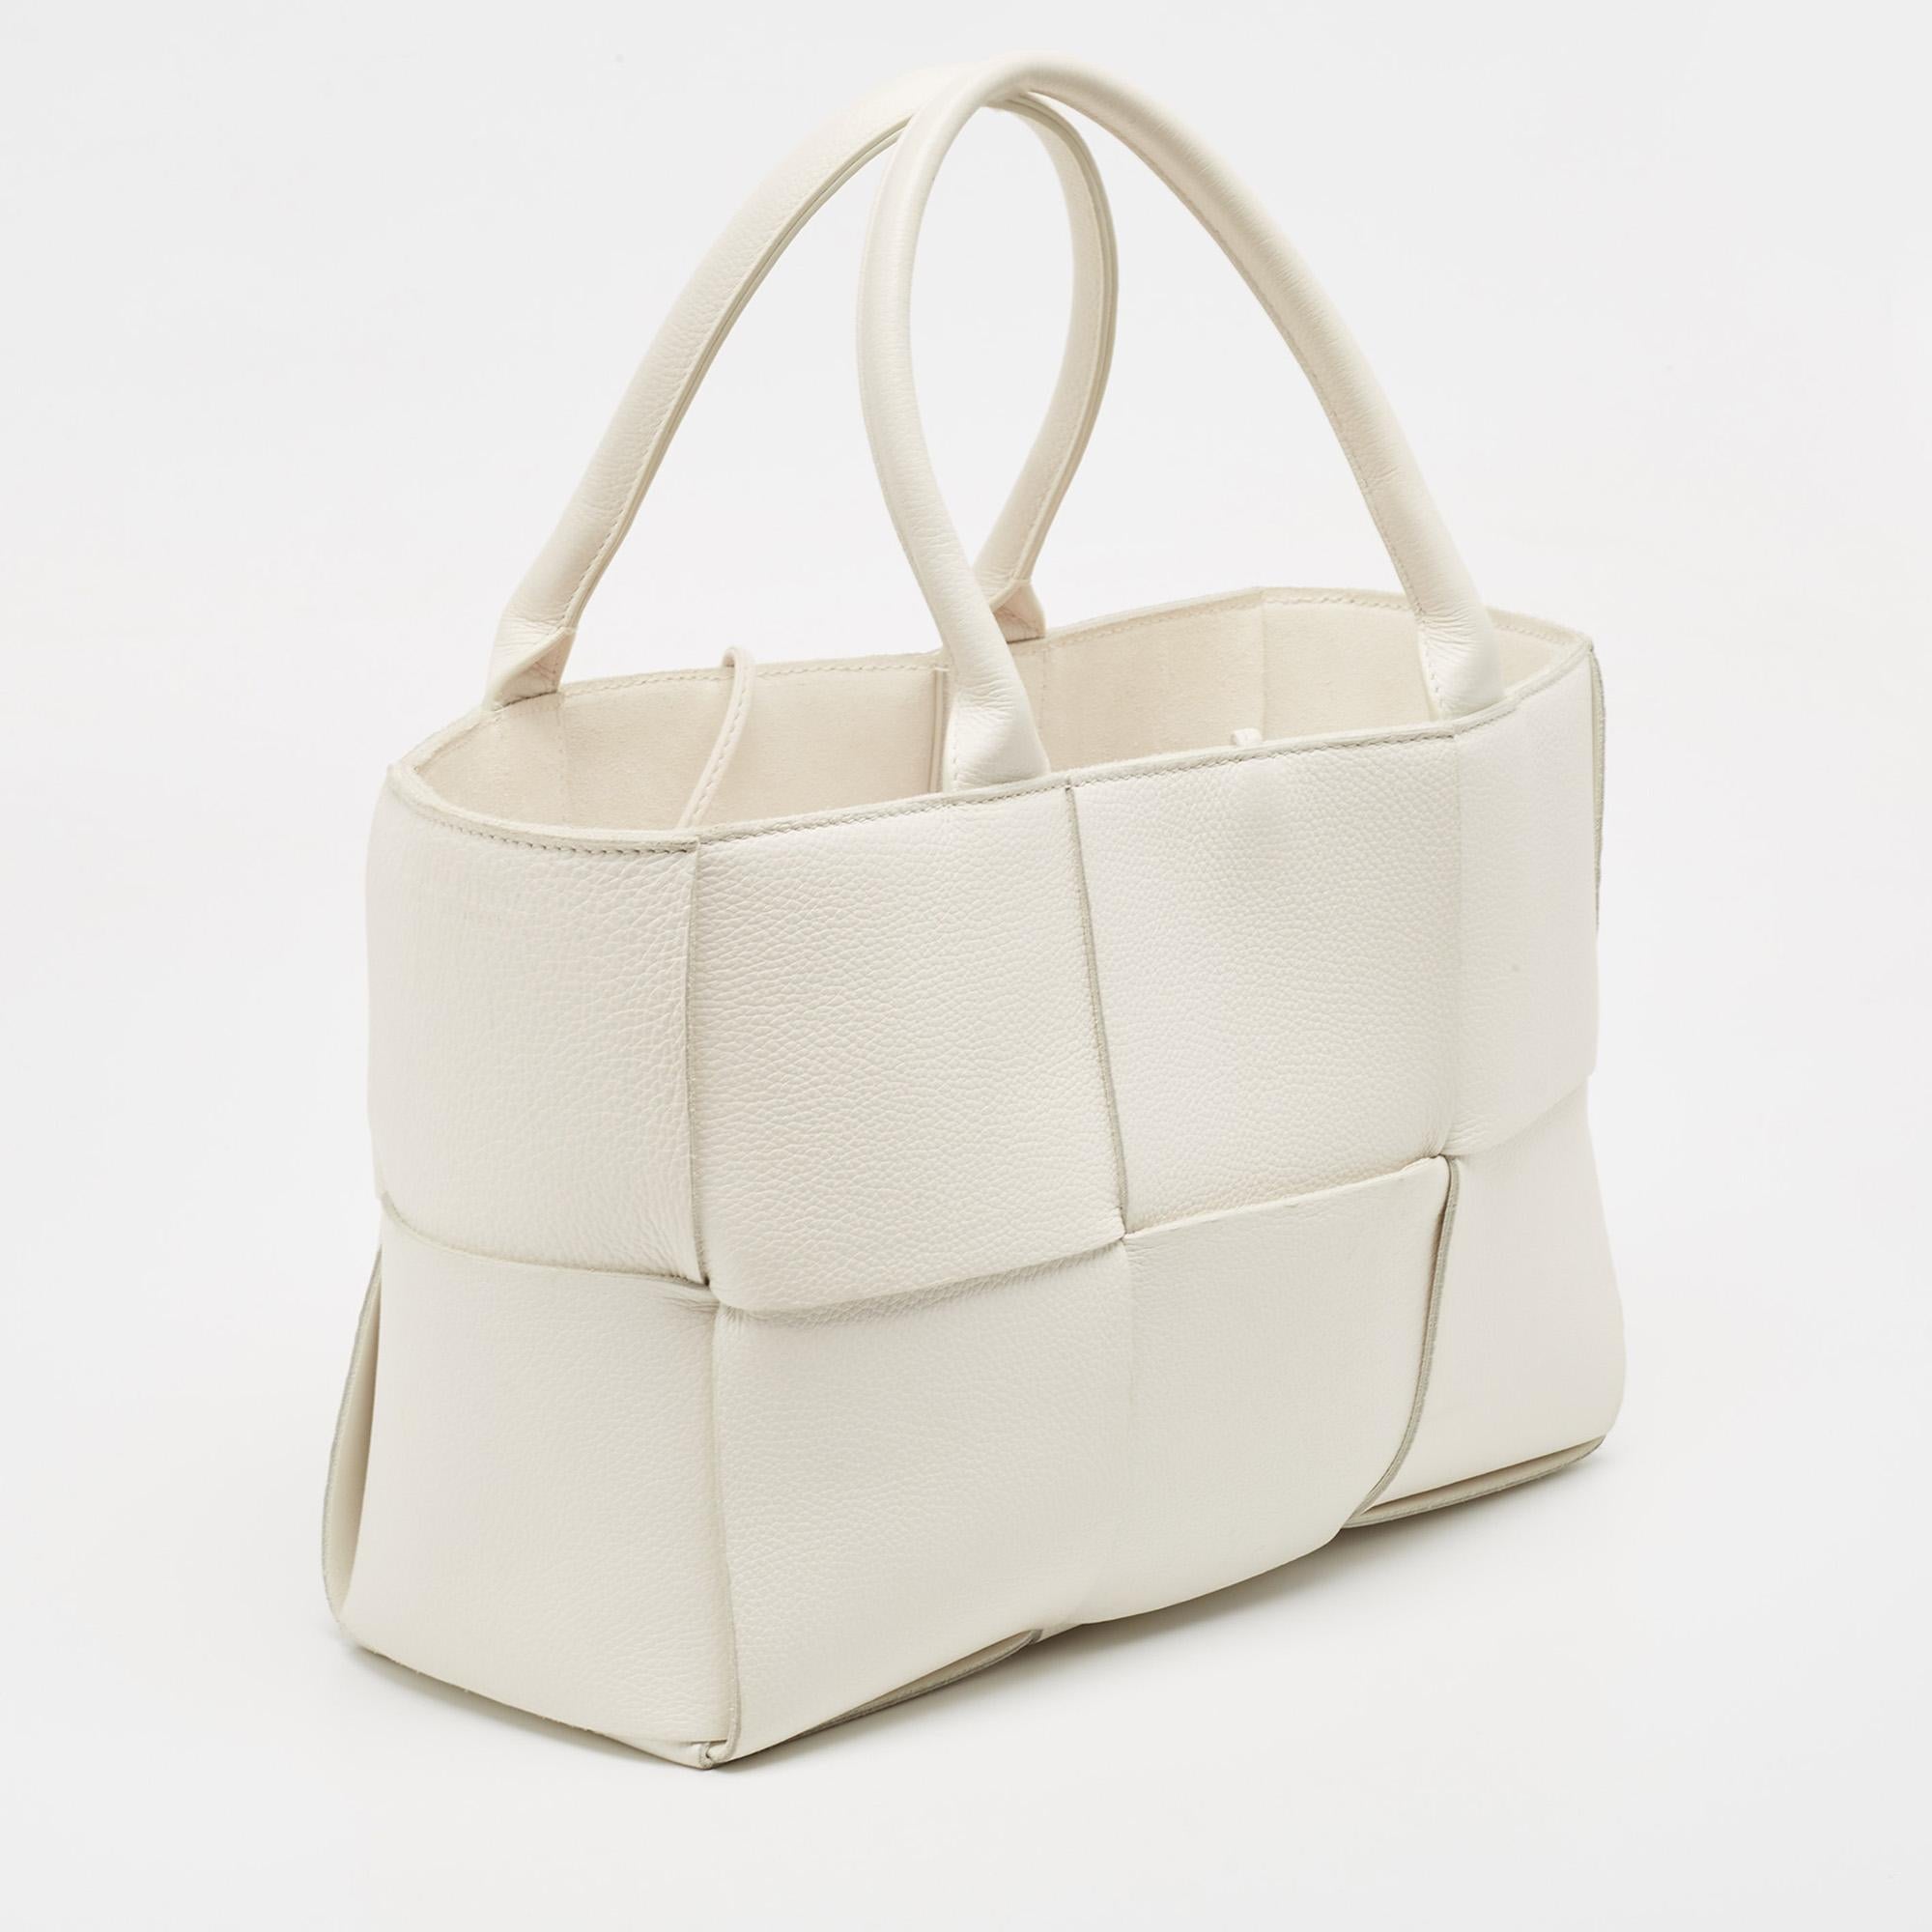 Bottega Veneta White Intrecciato Leather Arco Tote In Good Condition For Sale In Dubai, Al Qouz 2